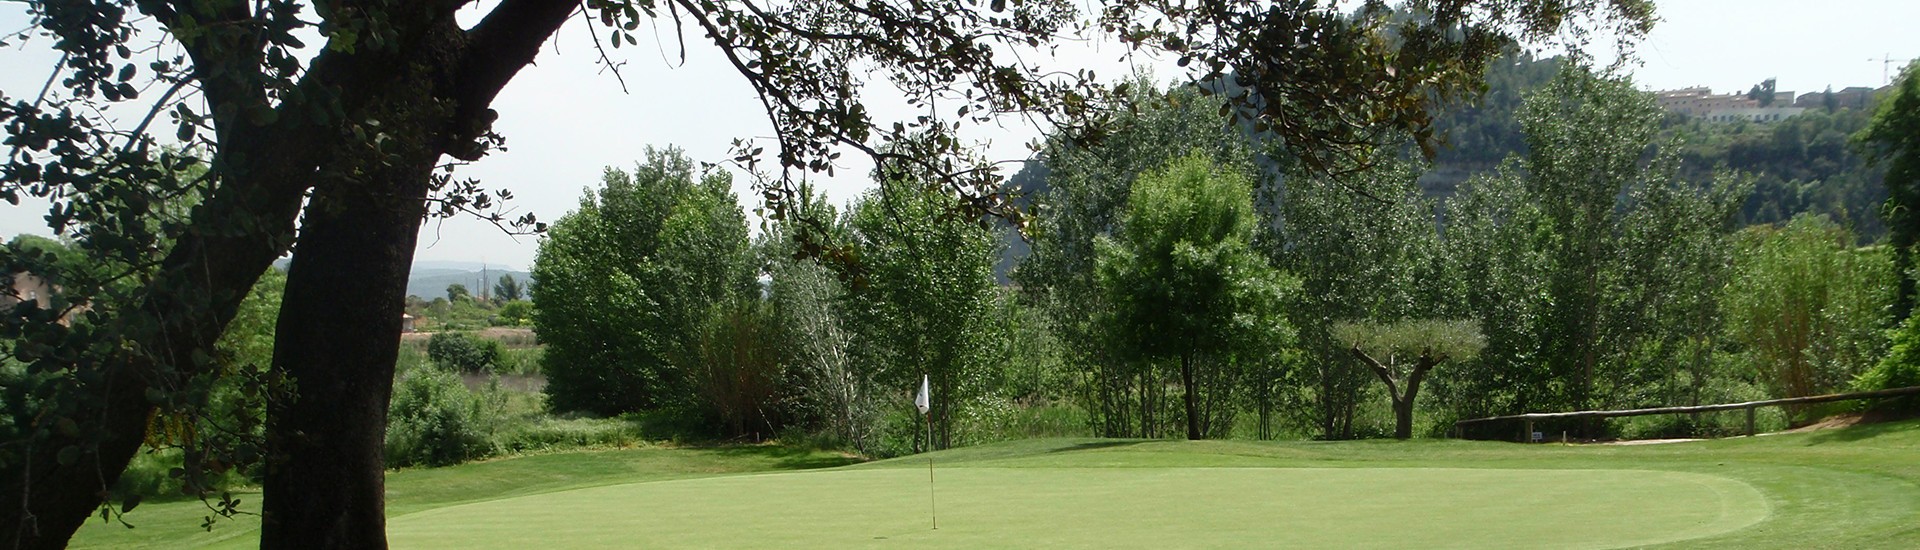 Golf La Roqueta